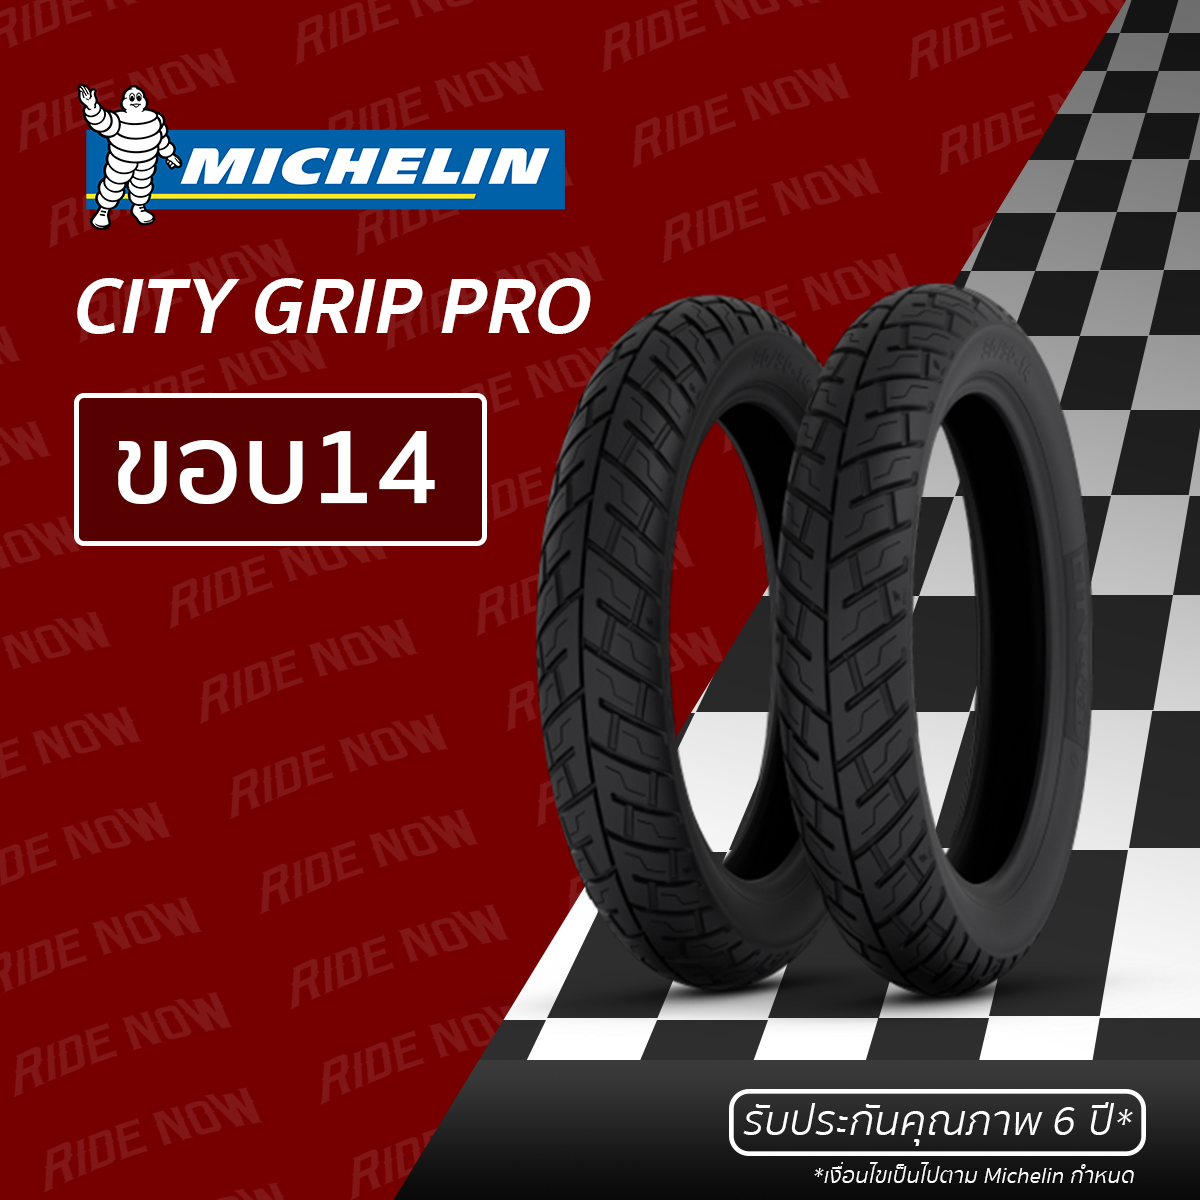 ยางมอเตอร์ไซค์ Michelin City Grip Pro ขอบ 14 ทุกขนาด MIO, TRICITY, SPACY i, SCOOPY i